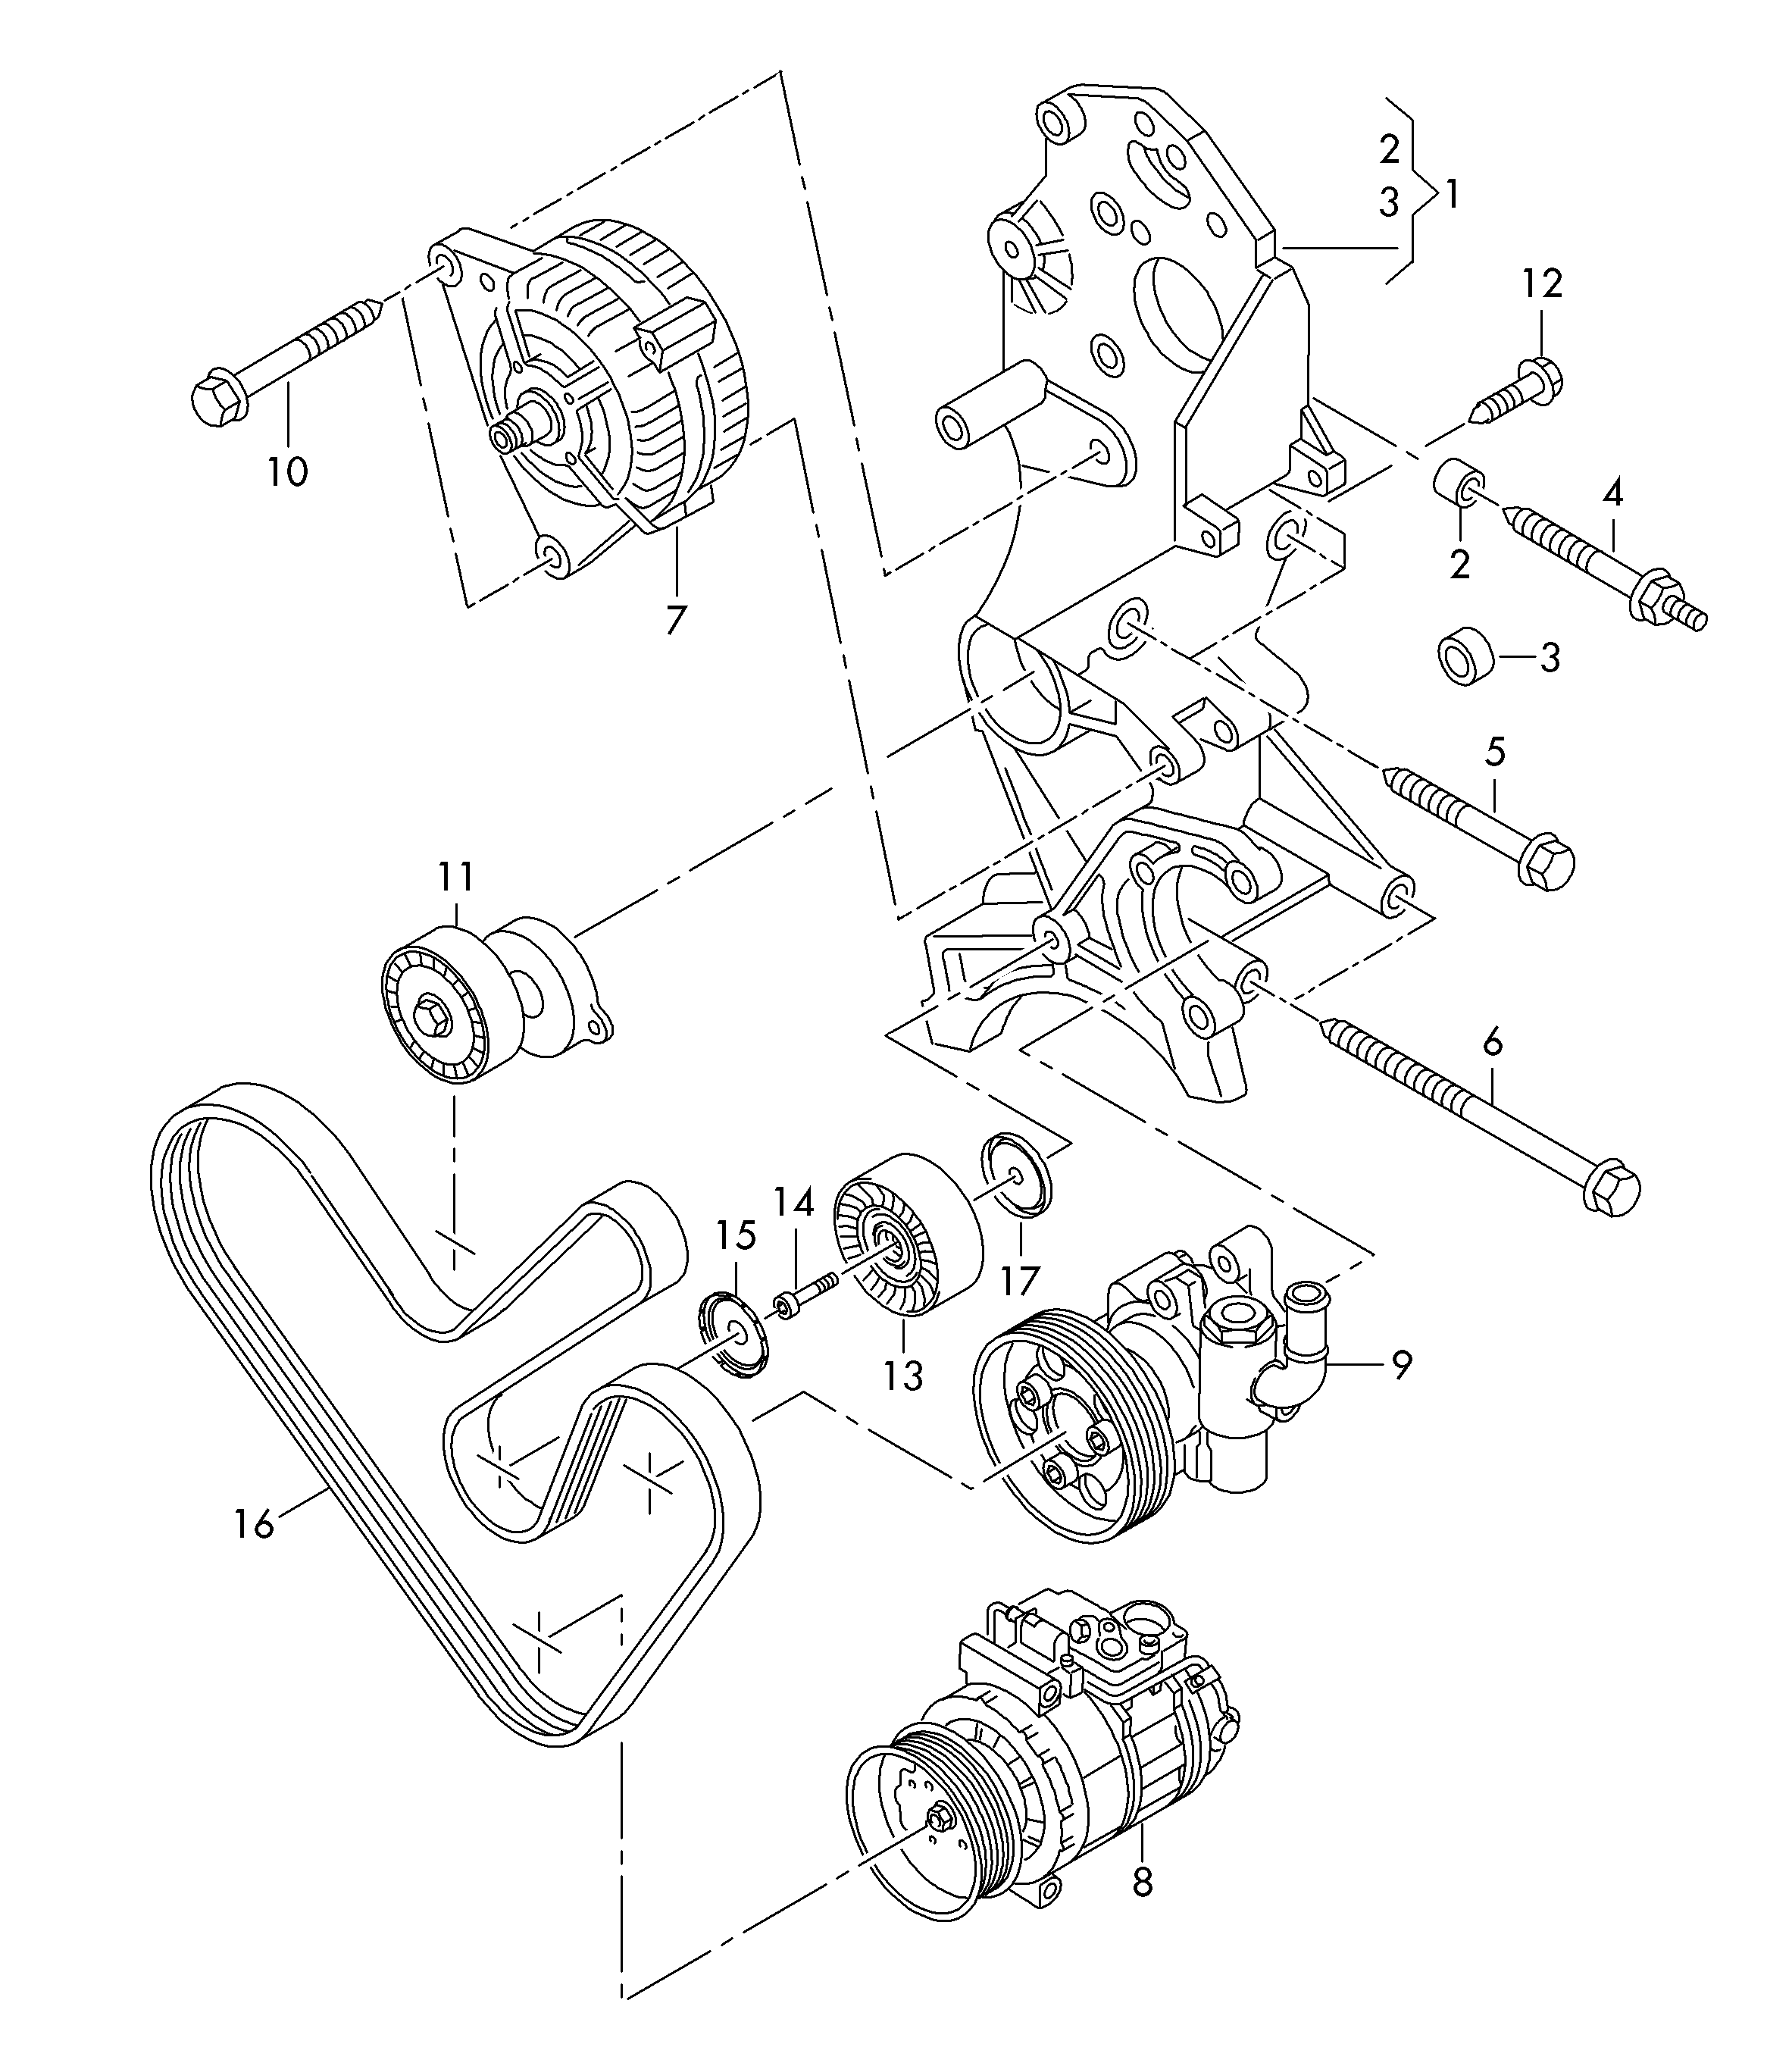 elementy polaczeniowe i<br>mocujace alternatora 2,0 l - Transporter - tr